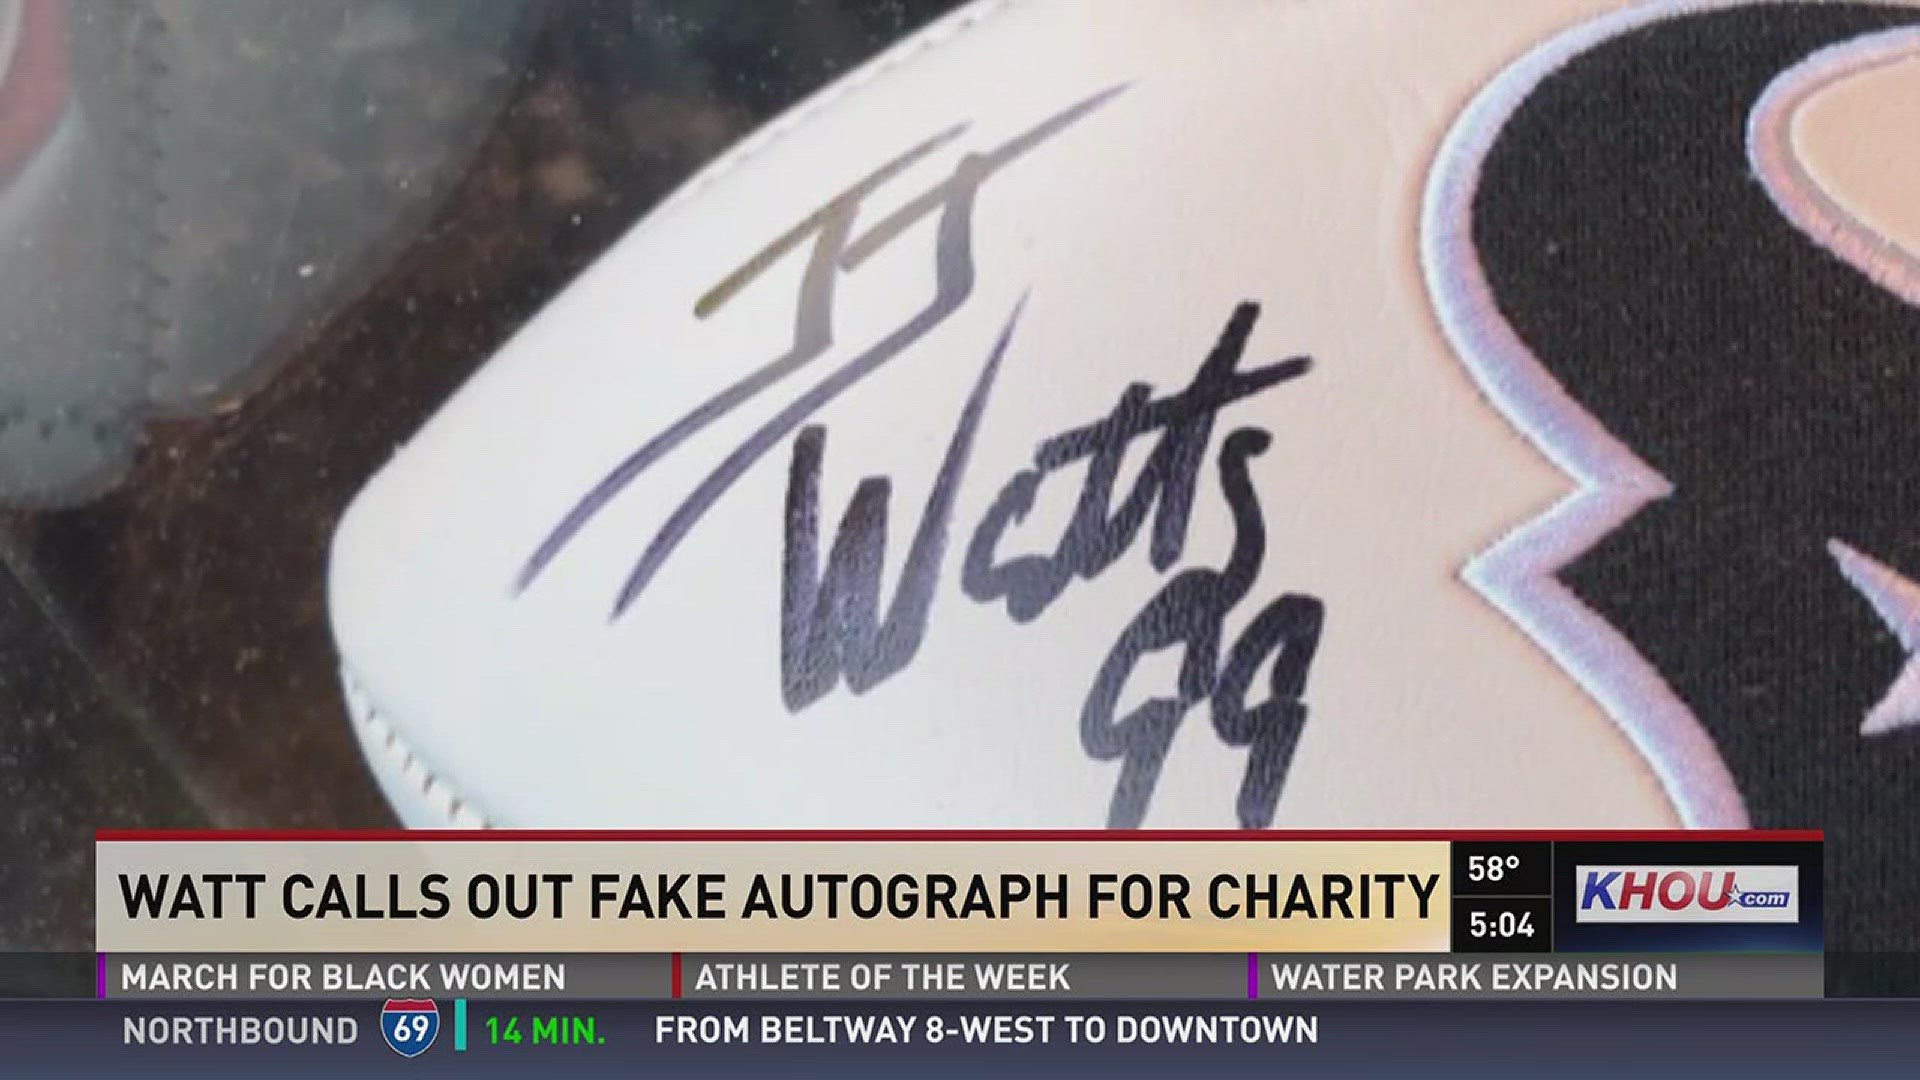 JJ Watt spots fake autograph, offers replacement